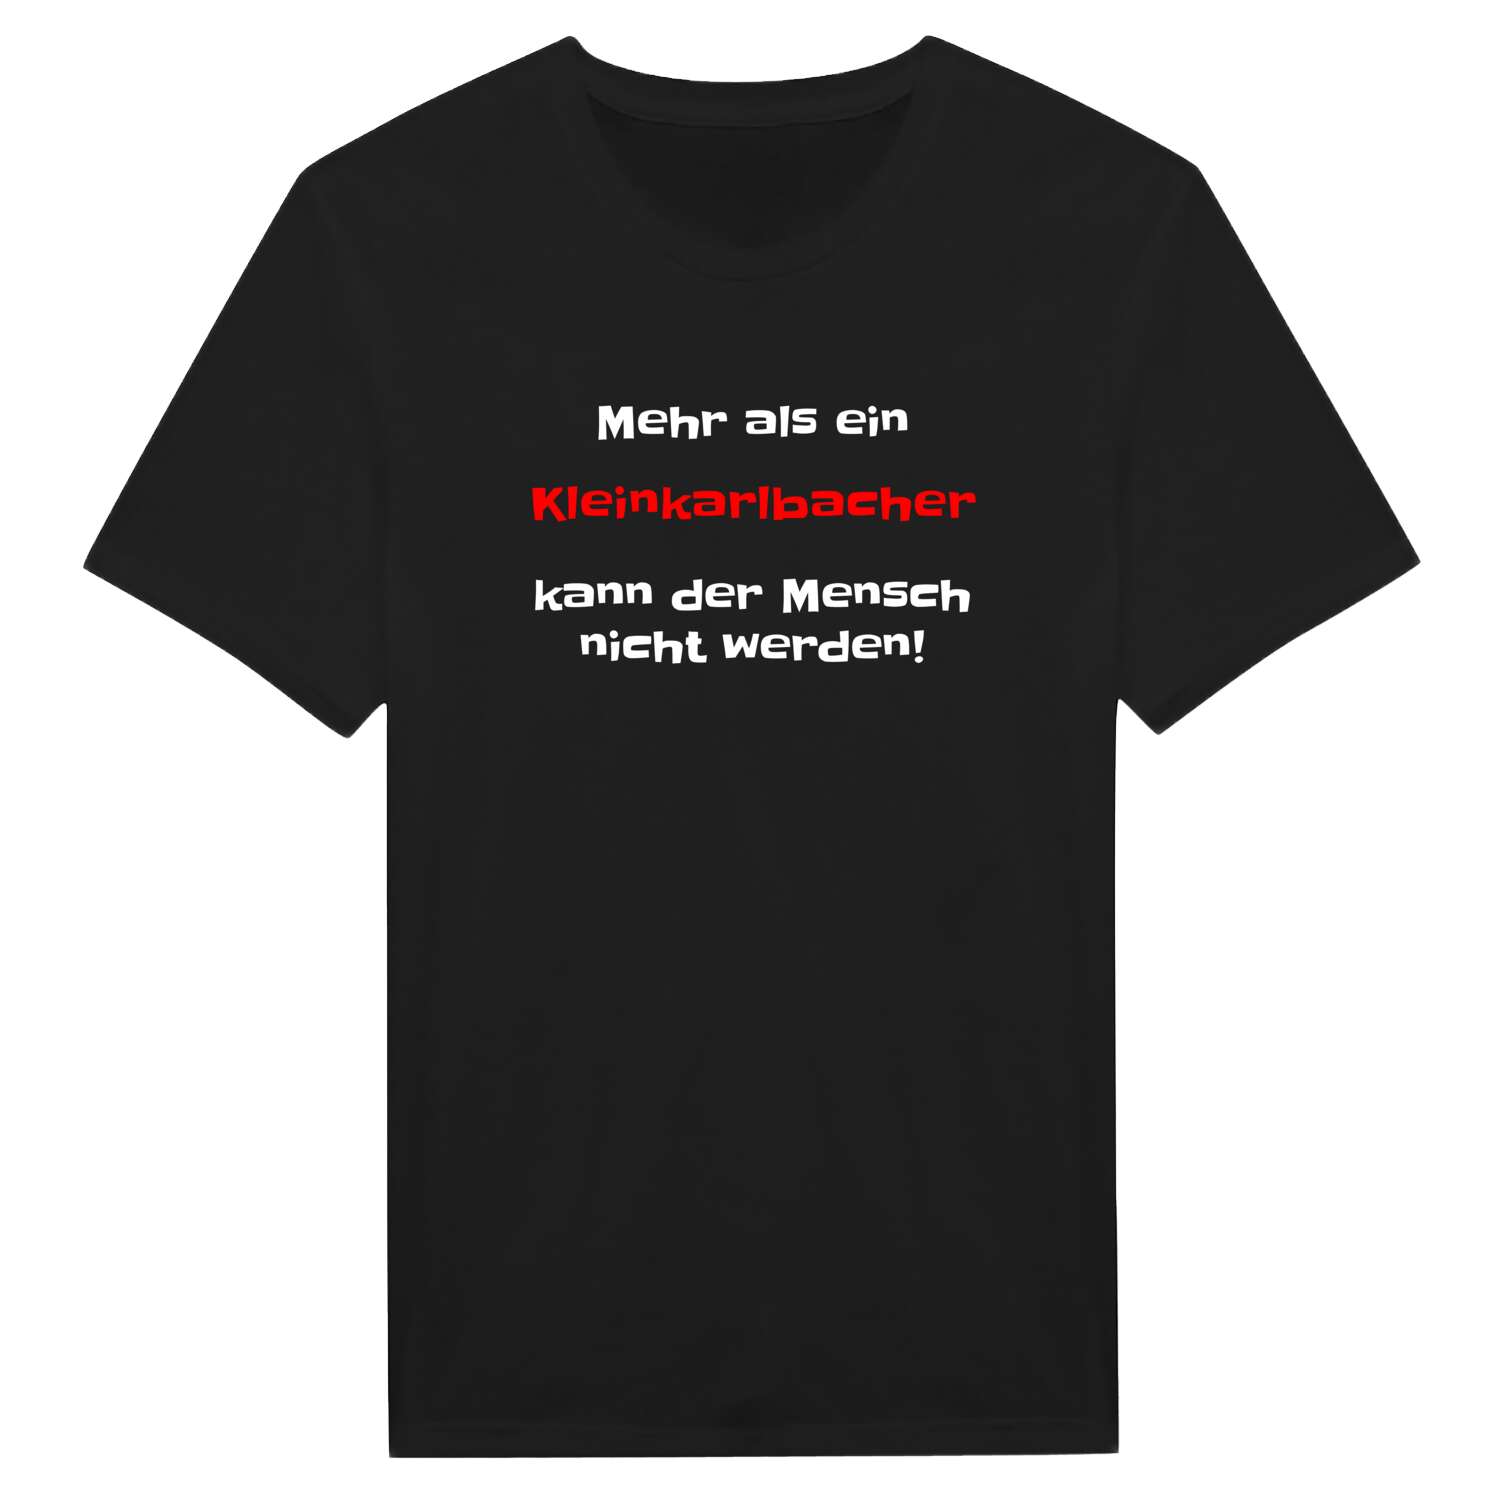 Kleinkarlbach T-Shirt »Mehr als ein«